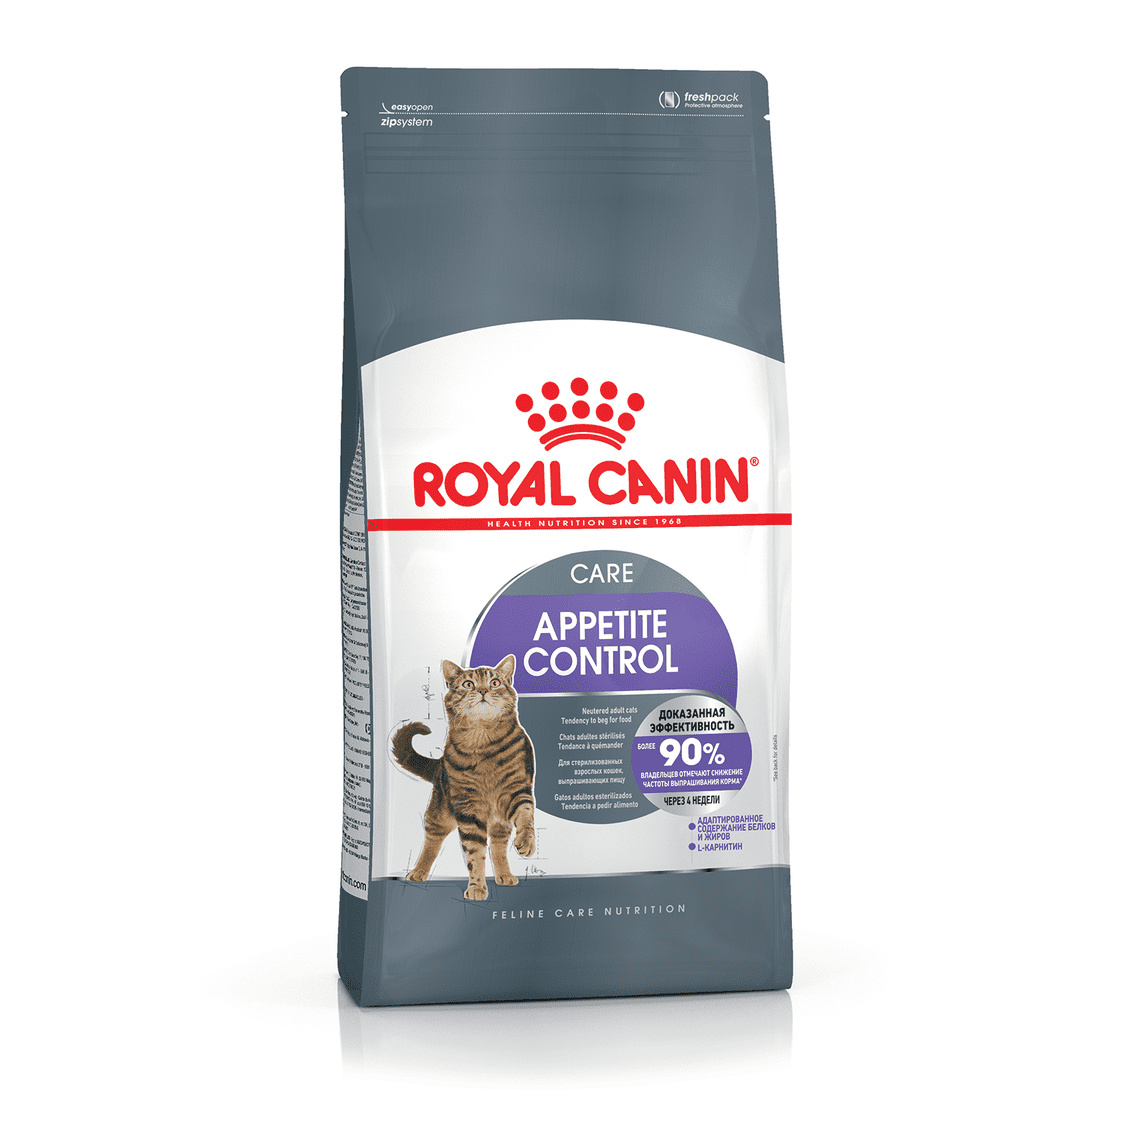 Royal Canin Корм Royal Canin для взрослых кошек, рекомендуется для контроля выпрашивания корма (400 г) 3шт 400гр royal canin сухой корм для взрослых кошек appetite control care предрасположенных к набору лишнего веса 1200 г